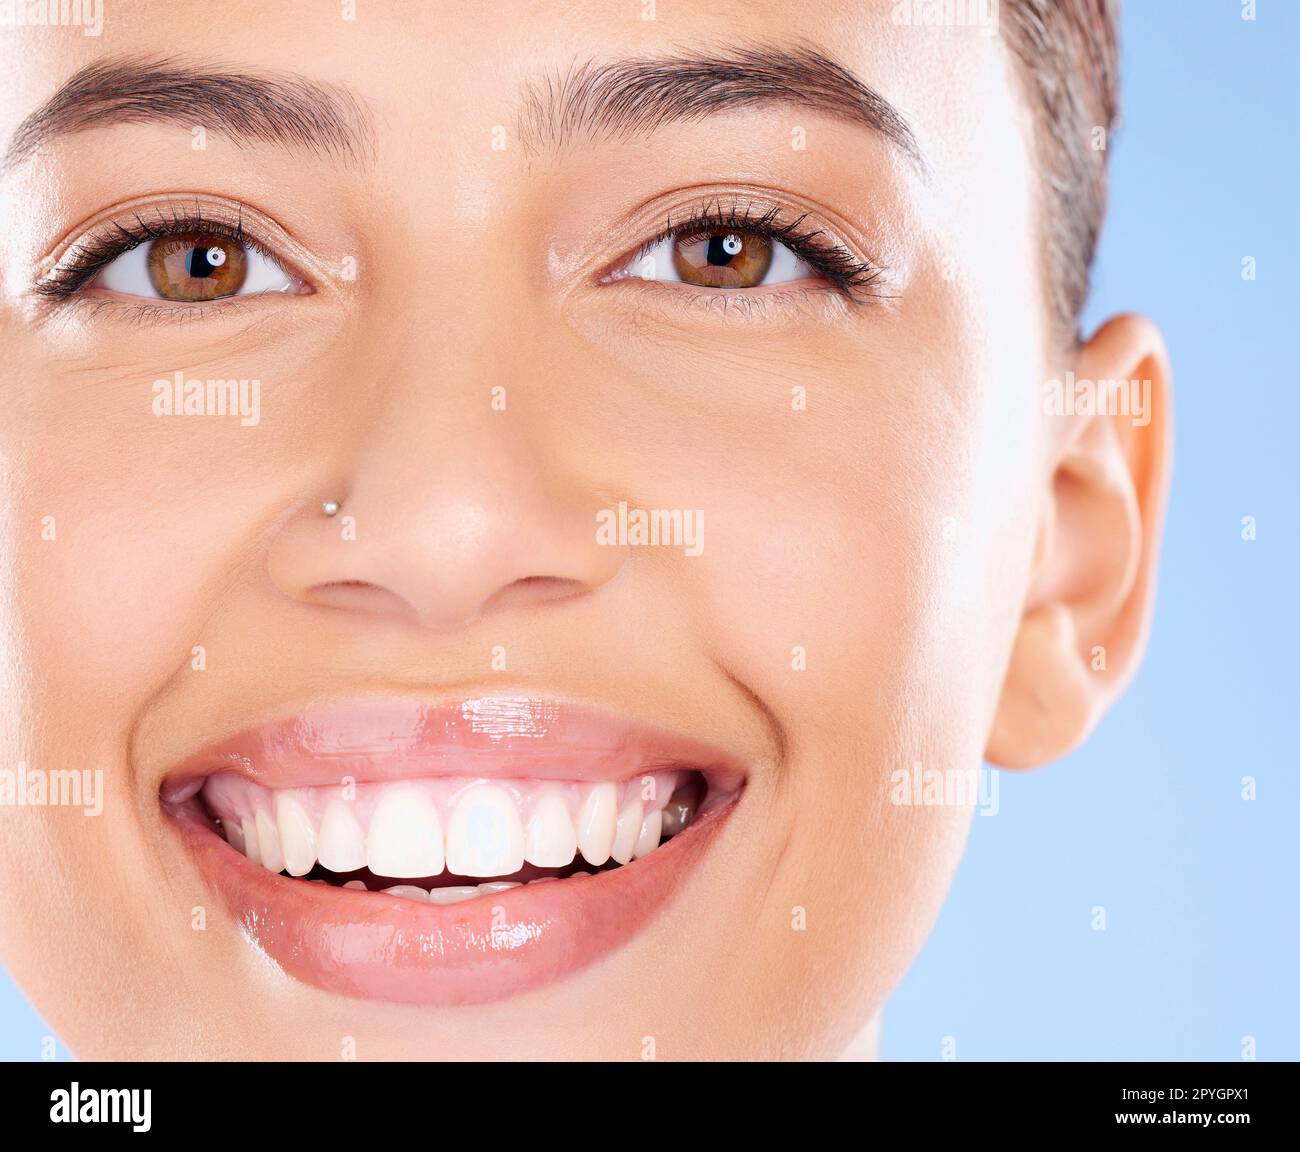 Zähne-, Zahn- und Gesichtsporträt einer Frau mit reinem Lächeln, Zahnaufhellung und Mundselbstpflege auf blauem Hintergrund. Zahnimplantat-, Gesundheits- und Schönheitsmodell mit Make-up, Kosmetik und Gesichtspflege Stockfoto